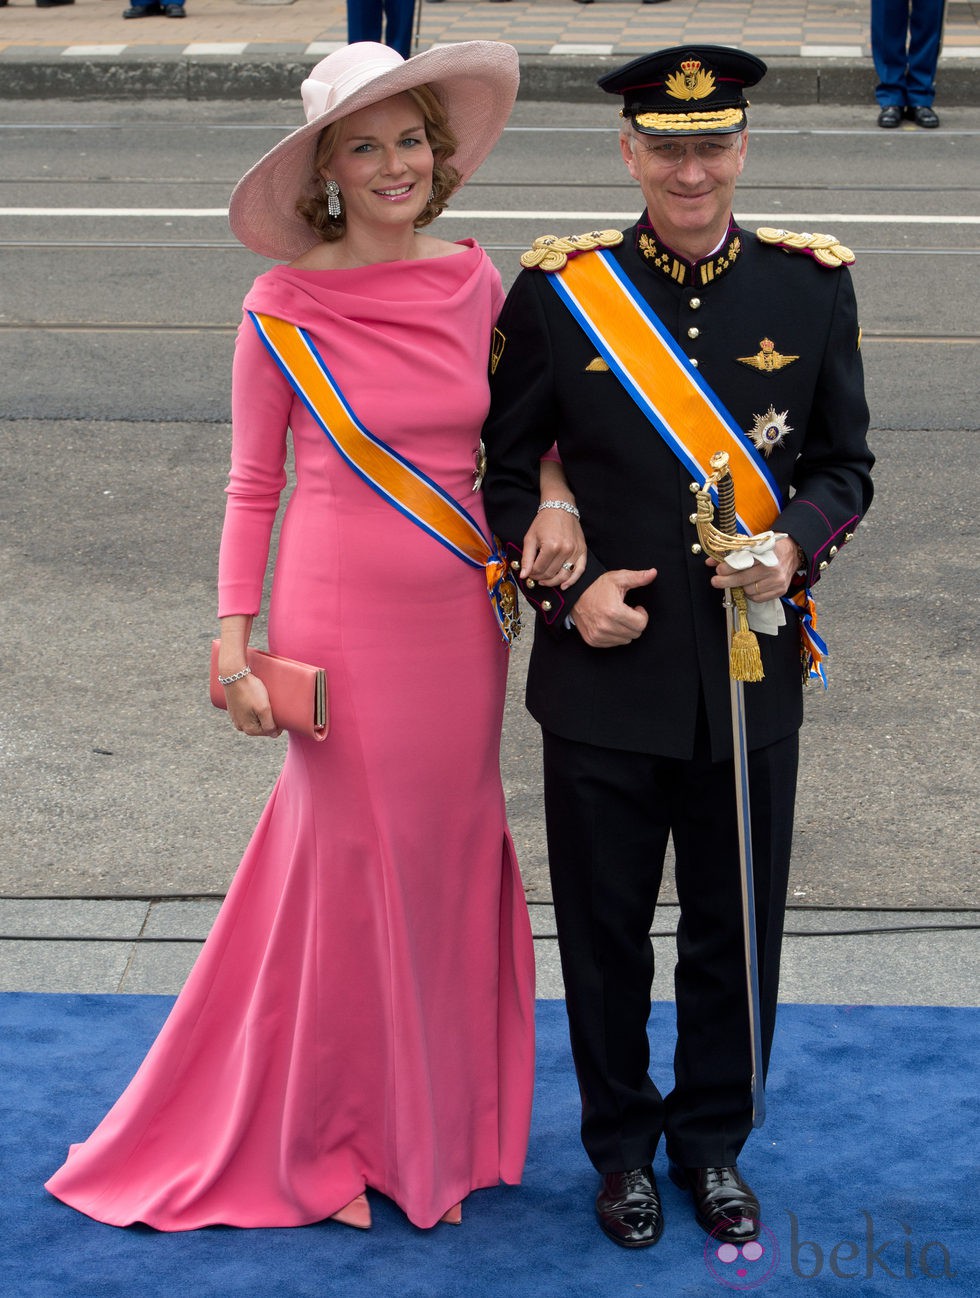 Matilde de Bélgica con un vestido rosa fucsia durante la ceremonia de investidura de Guillermo de Holanda